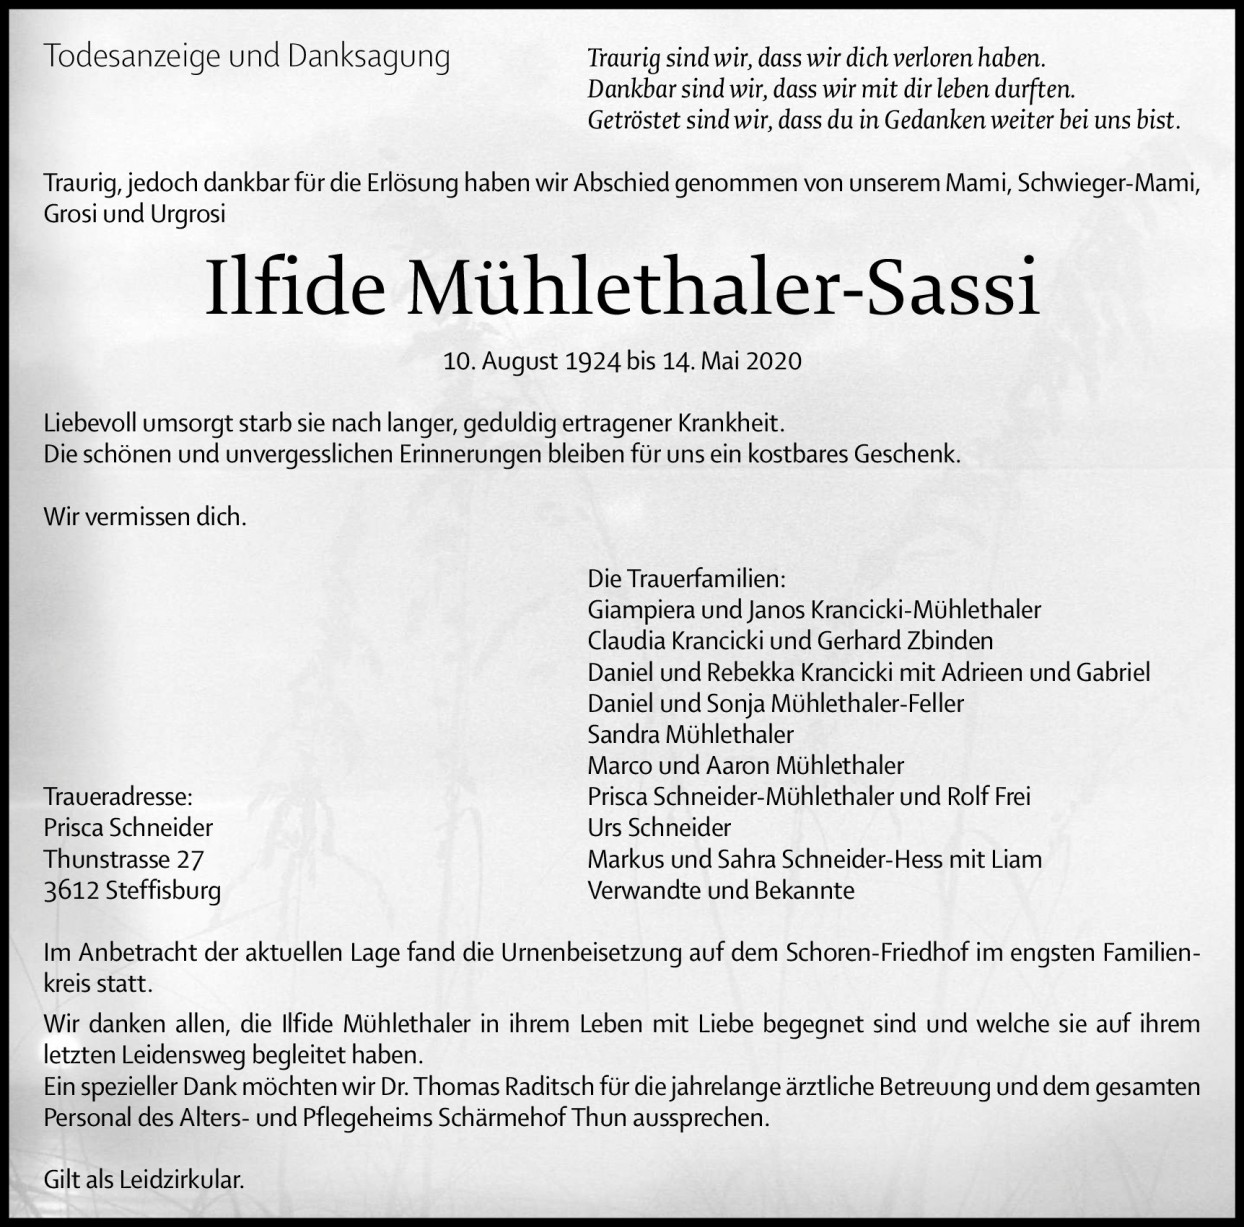 Ilfide Mühlethaler-Sassi